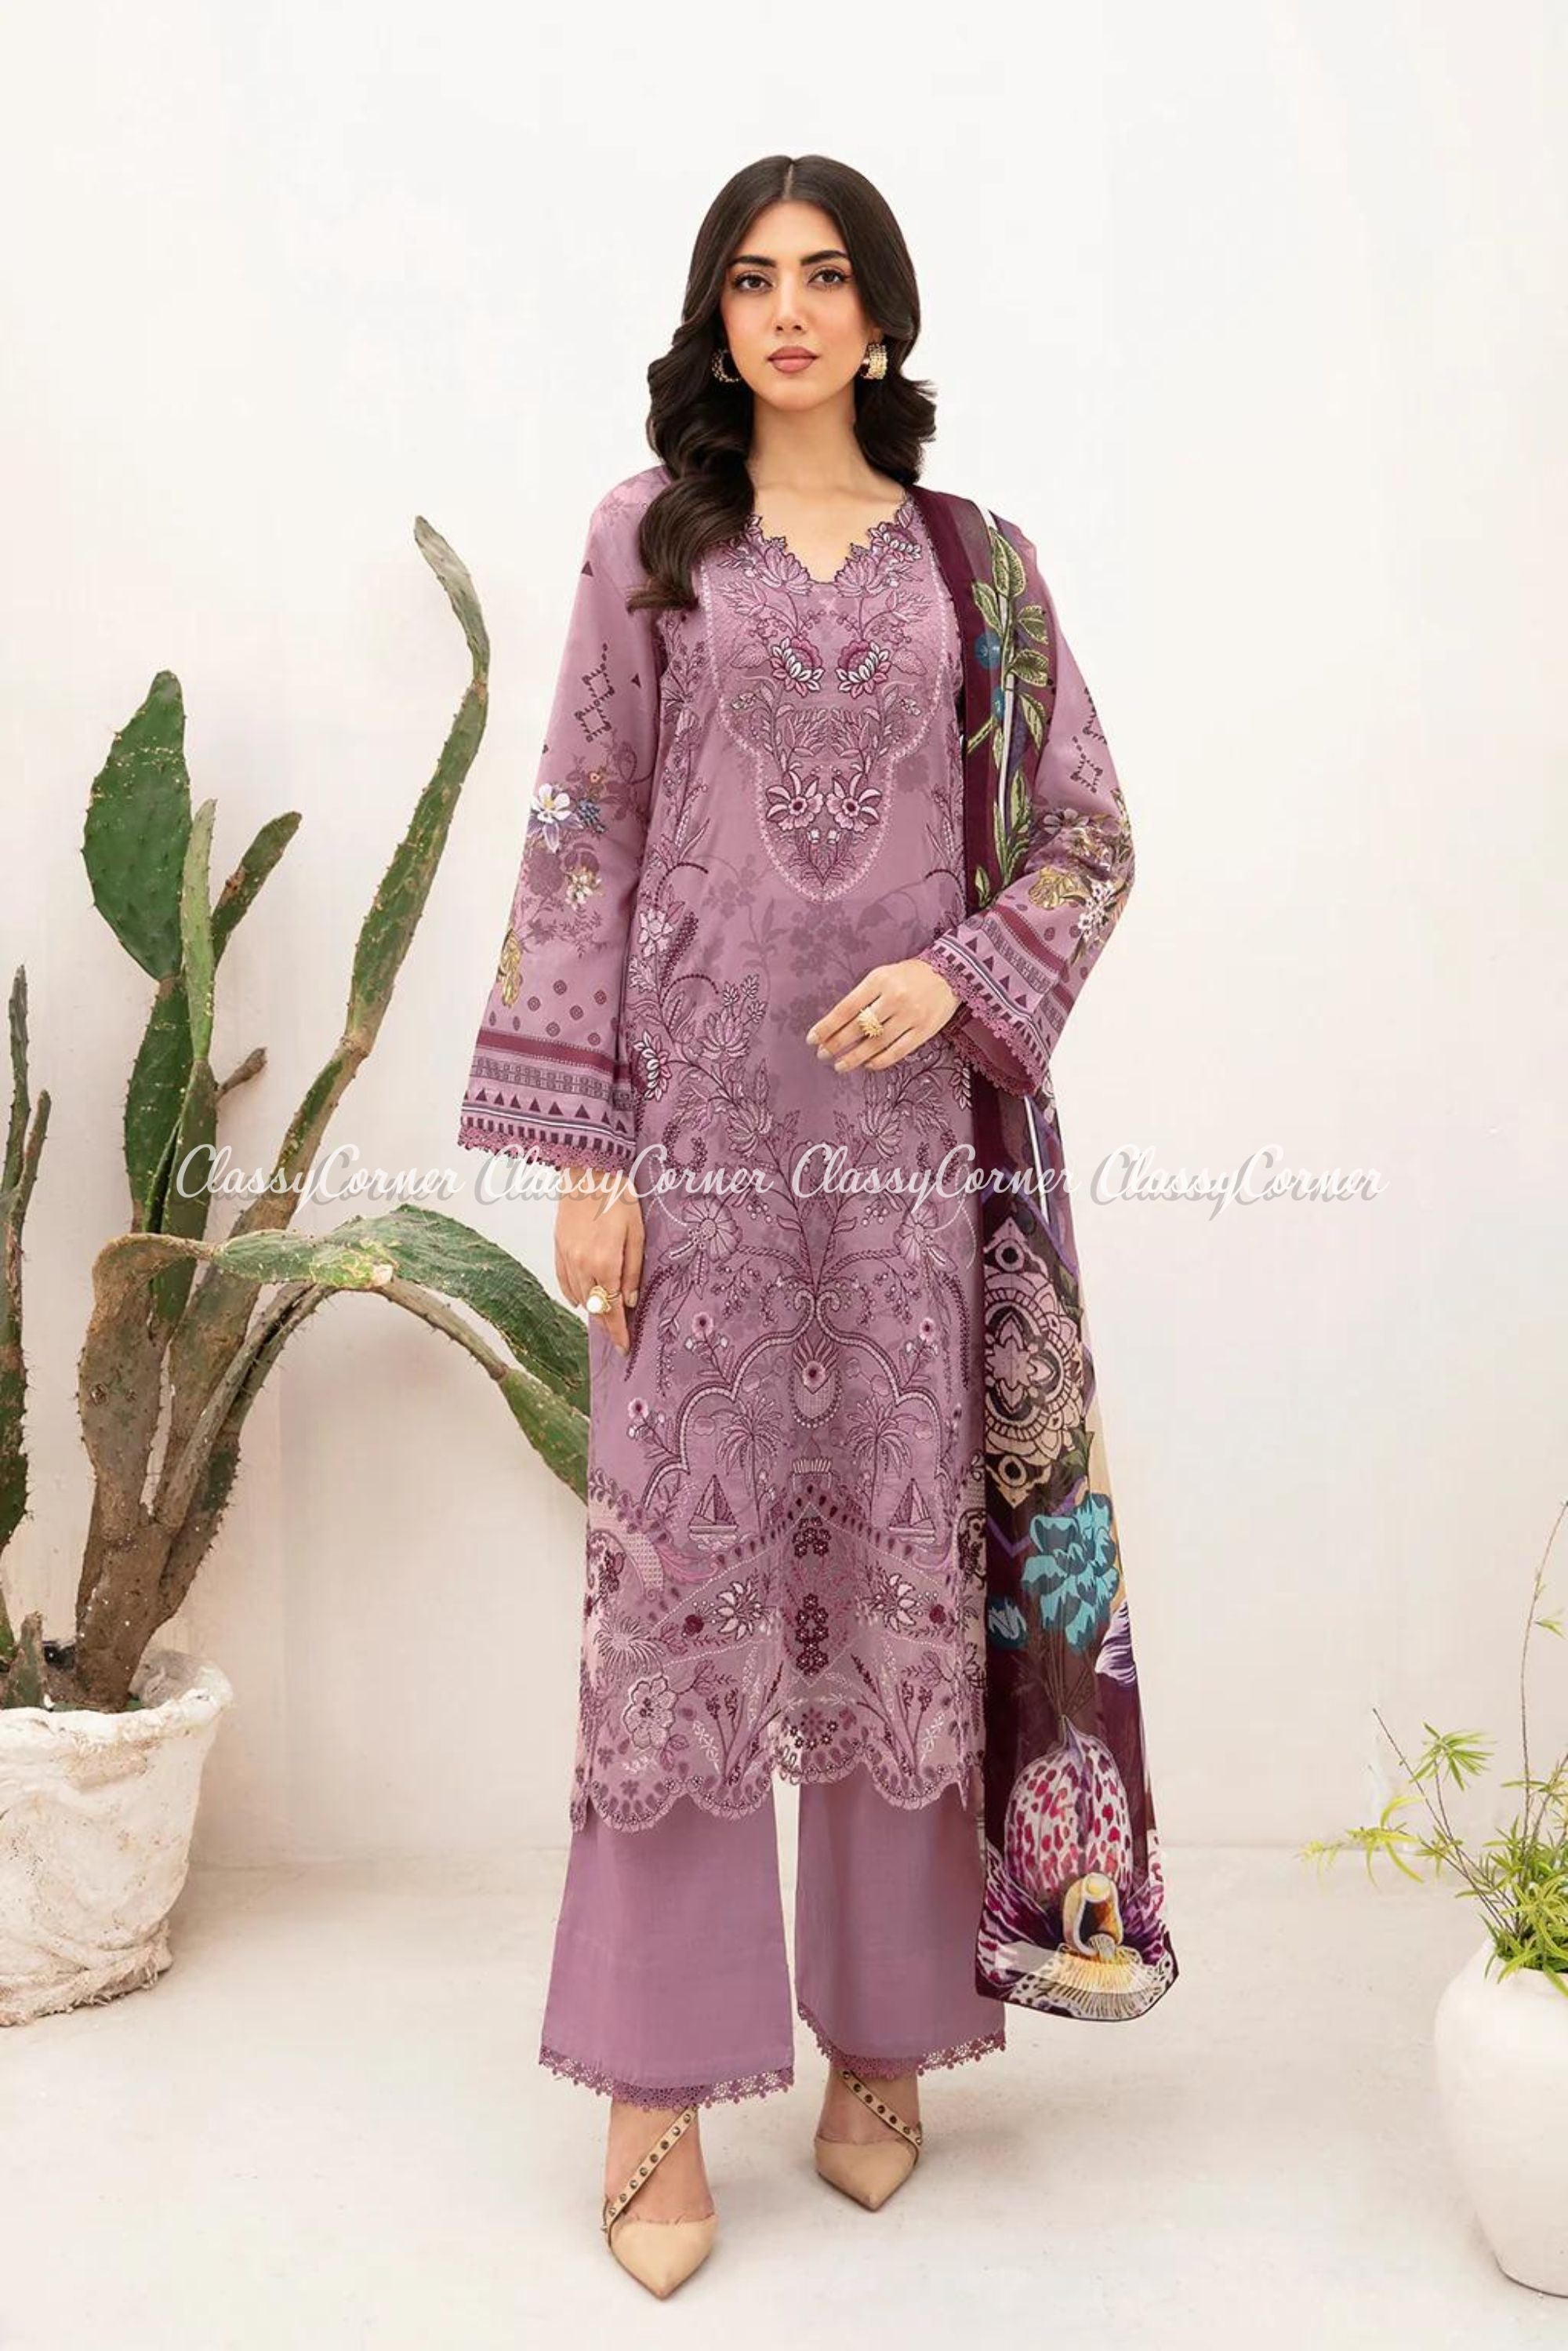 Fancy Pakistani Dresses For Women